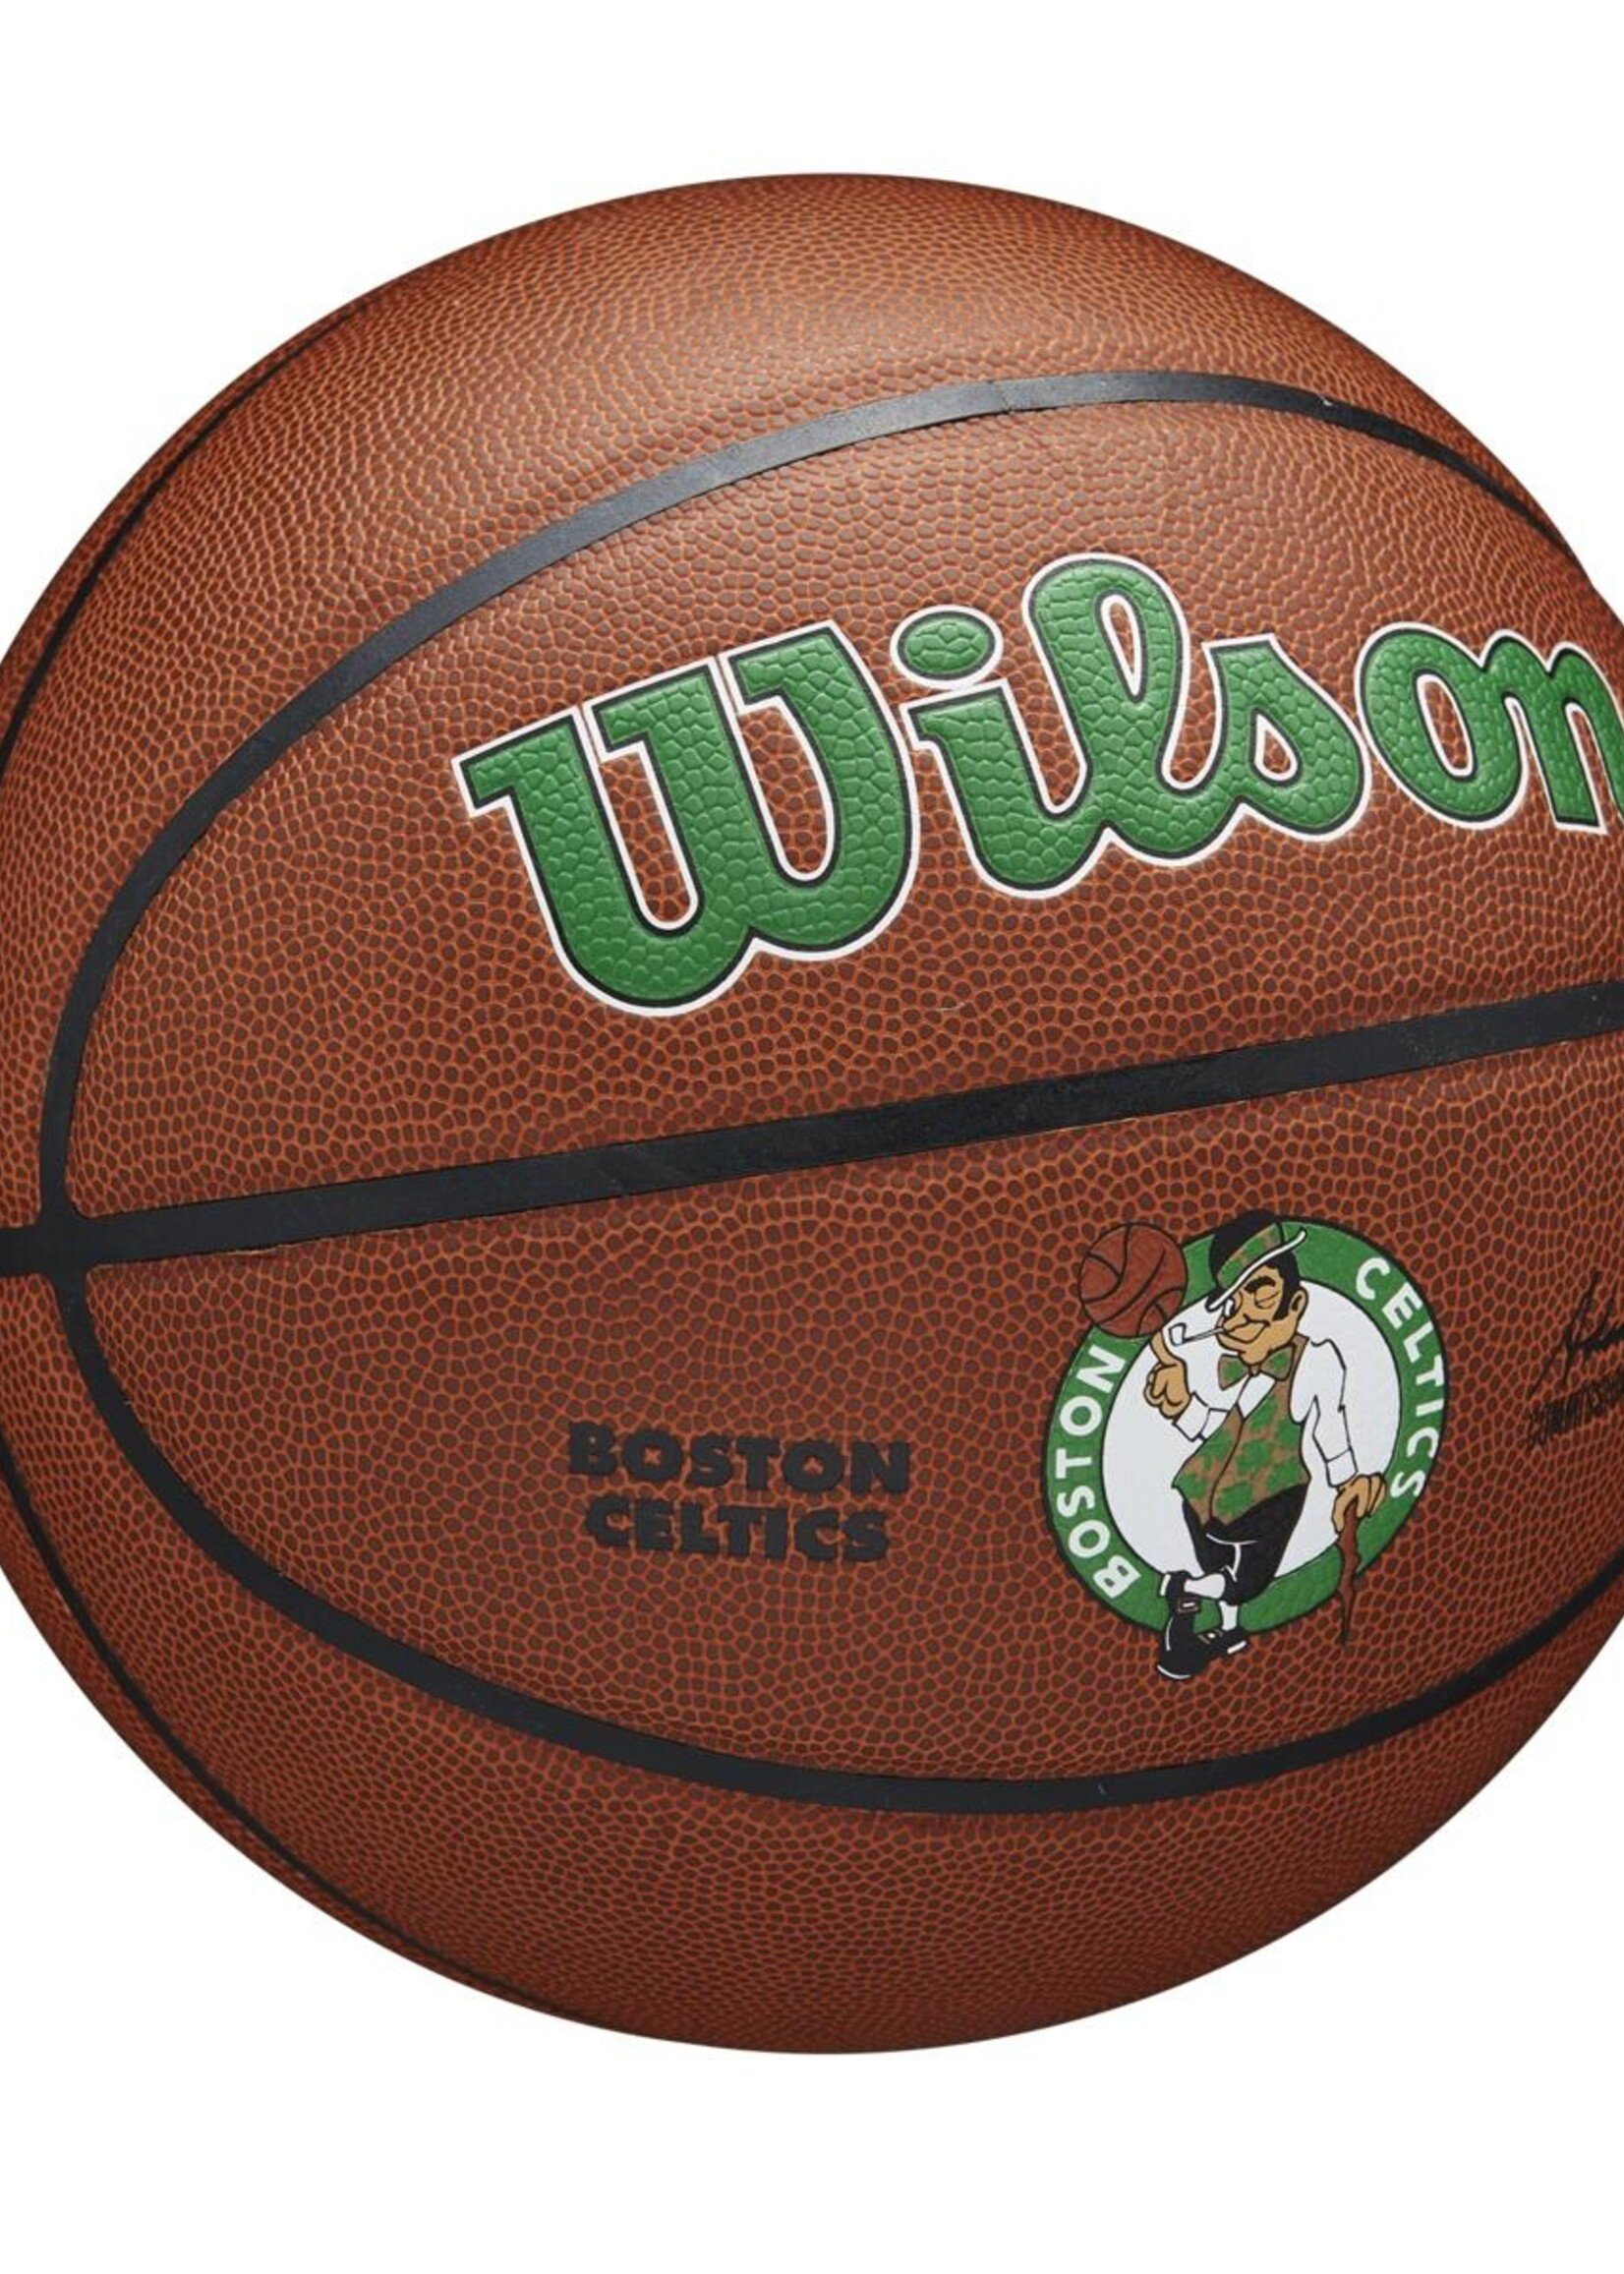 Wilson Wilson NBA BOSTON CELTICS Composite Indoor / Outdoor Basketbal (7)